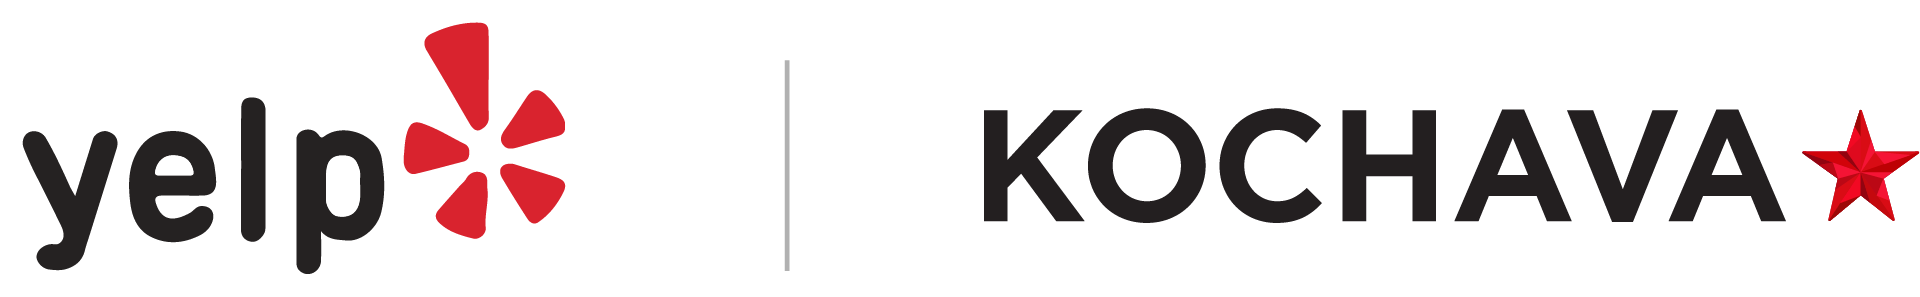 Yelp and Kochava logos